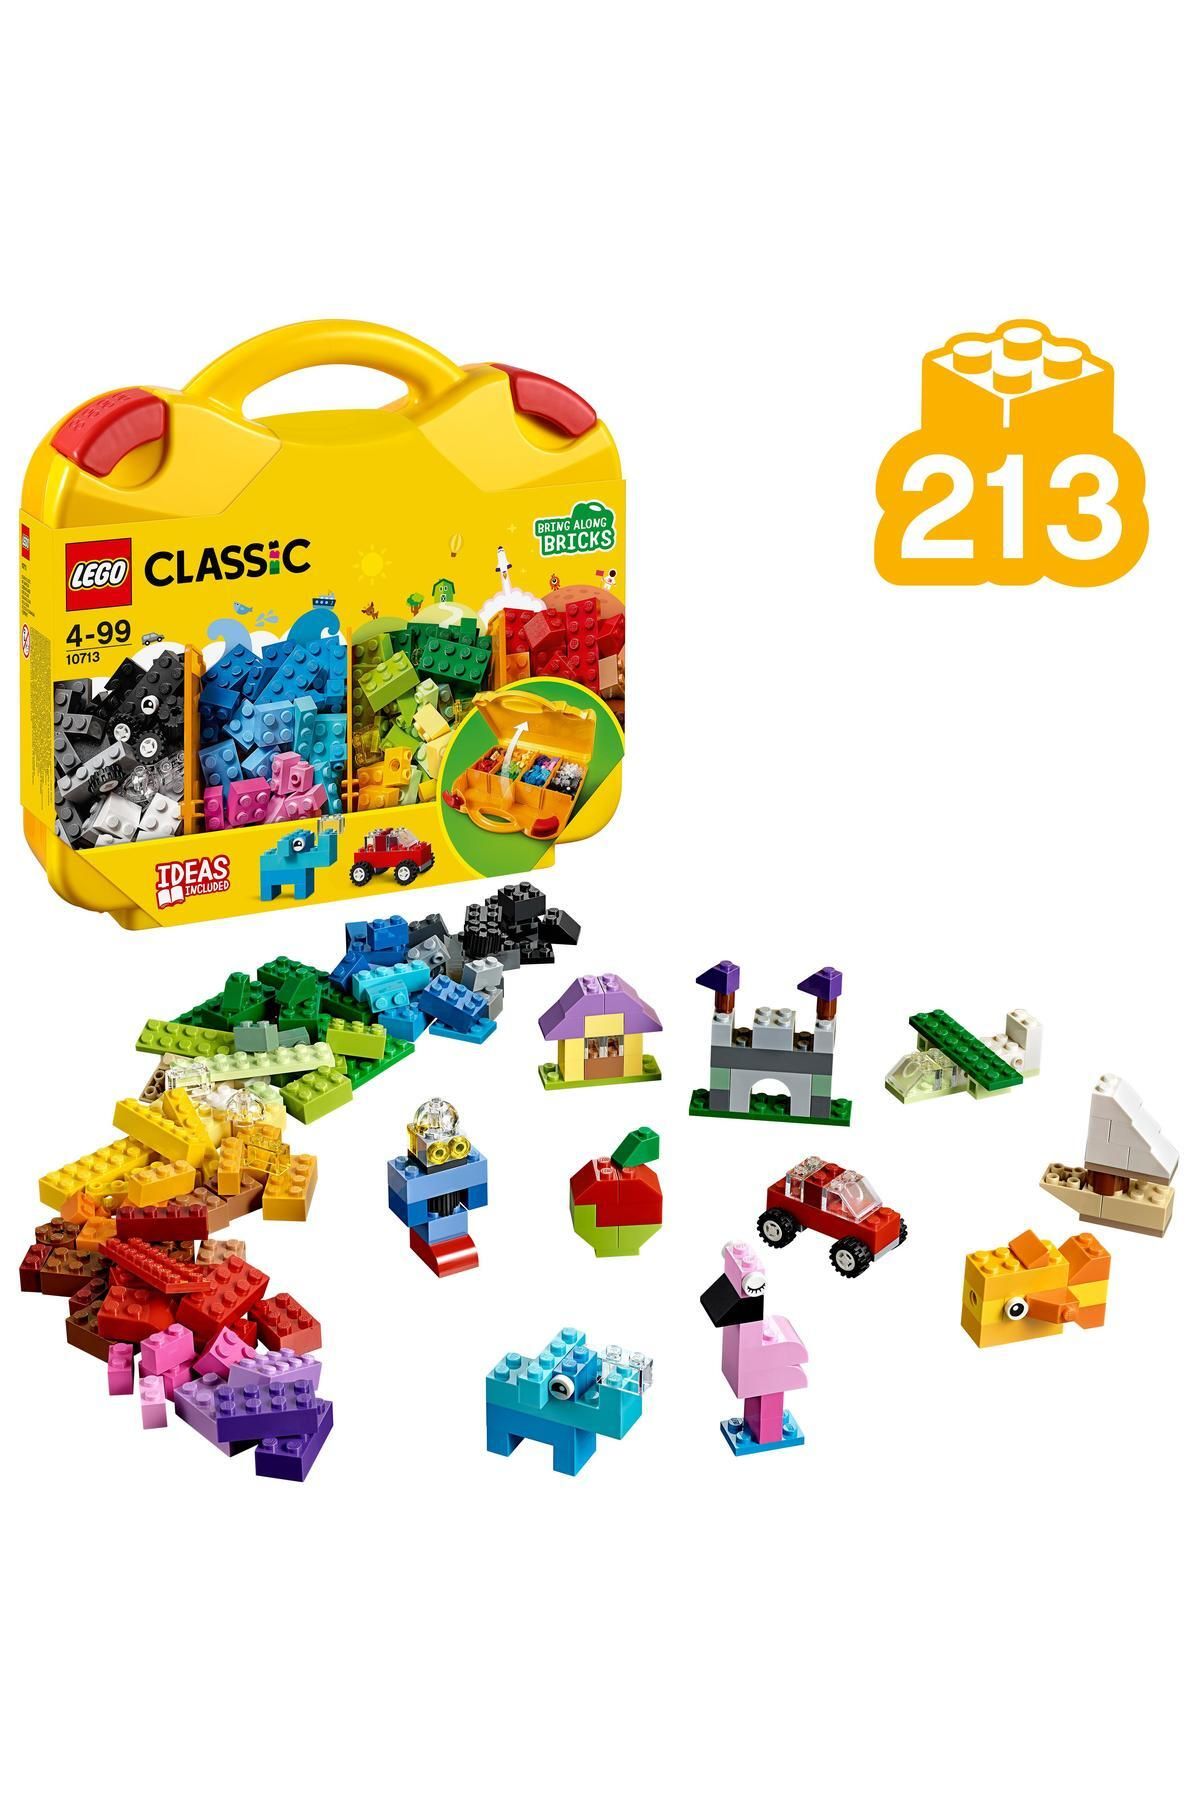 LEGO Classic Yaratıcı Çanta 10713 - 4 Yaş ve Üzeri Çocuklar için Oyuncak Yapım Seti (213 Parça)